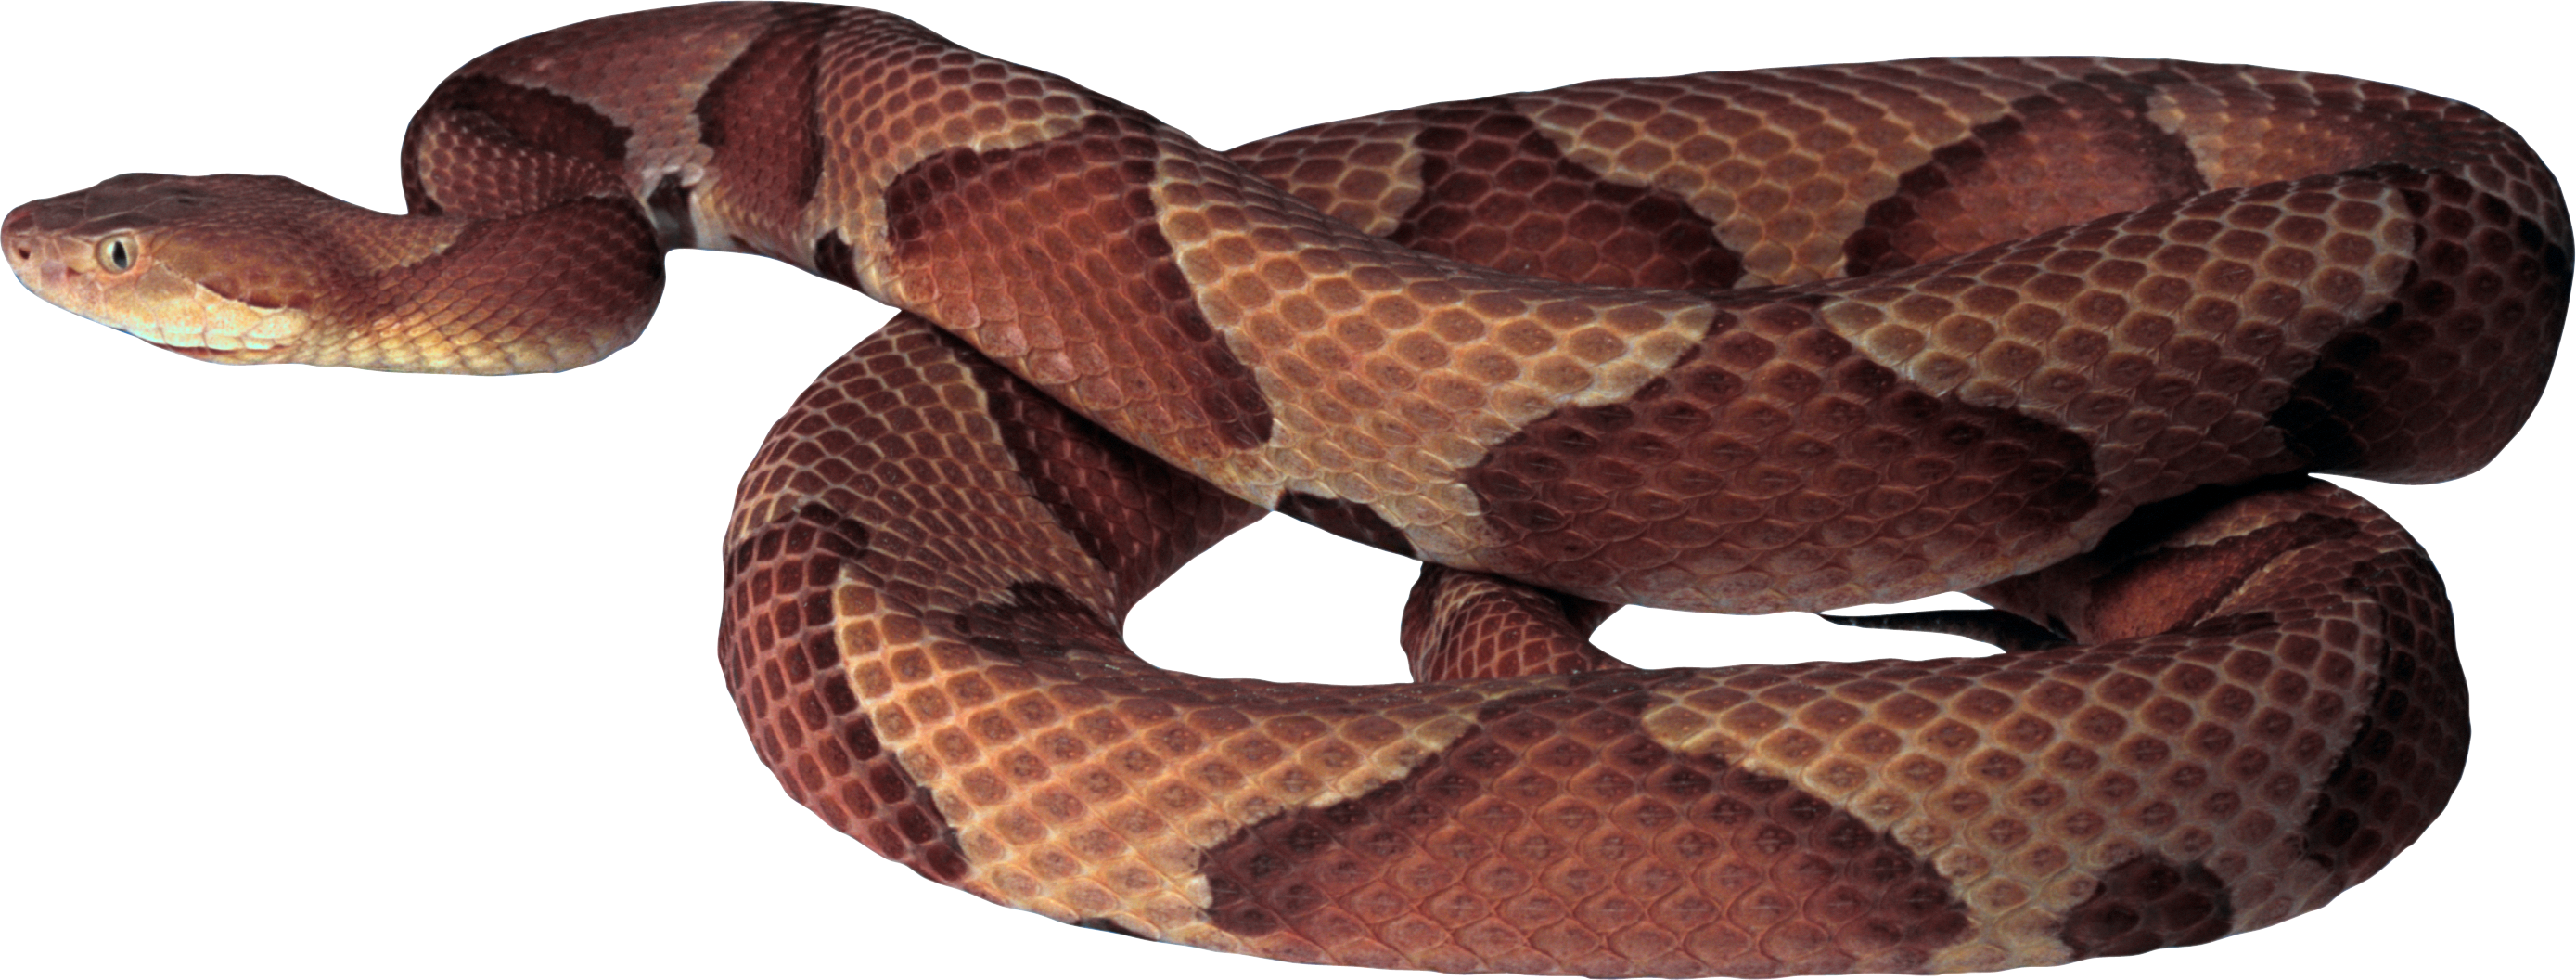 clipart snake brown snake